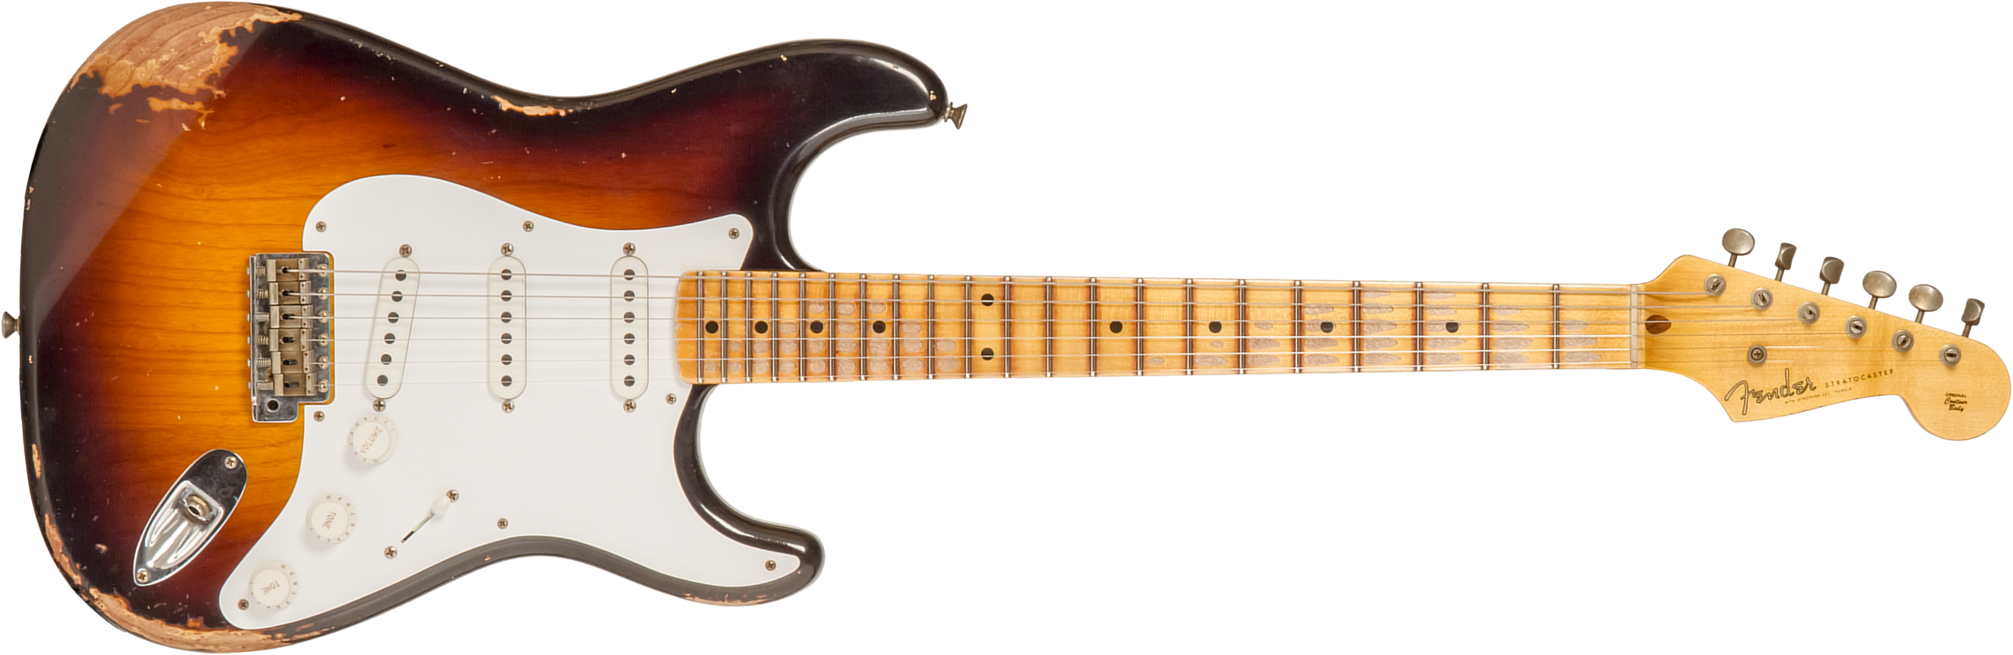 Fender Custom Shop Strat 1954 70th Anniv. 3s Trem Mn #xn4309 - Heavy Relic Wide Fade 2-color Sunburst - E-Gitarre in Str-Form - Main picture